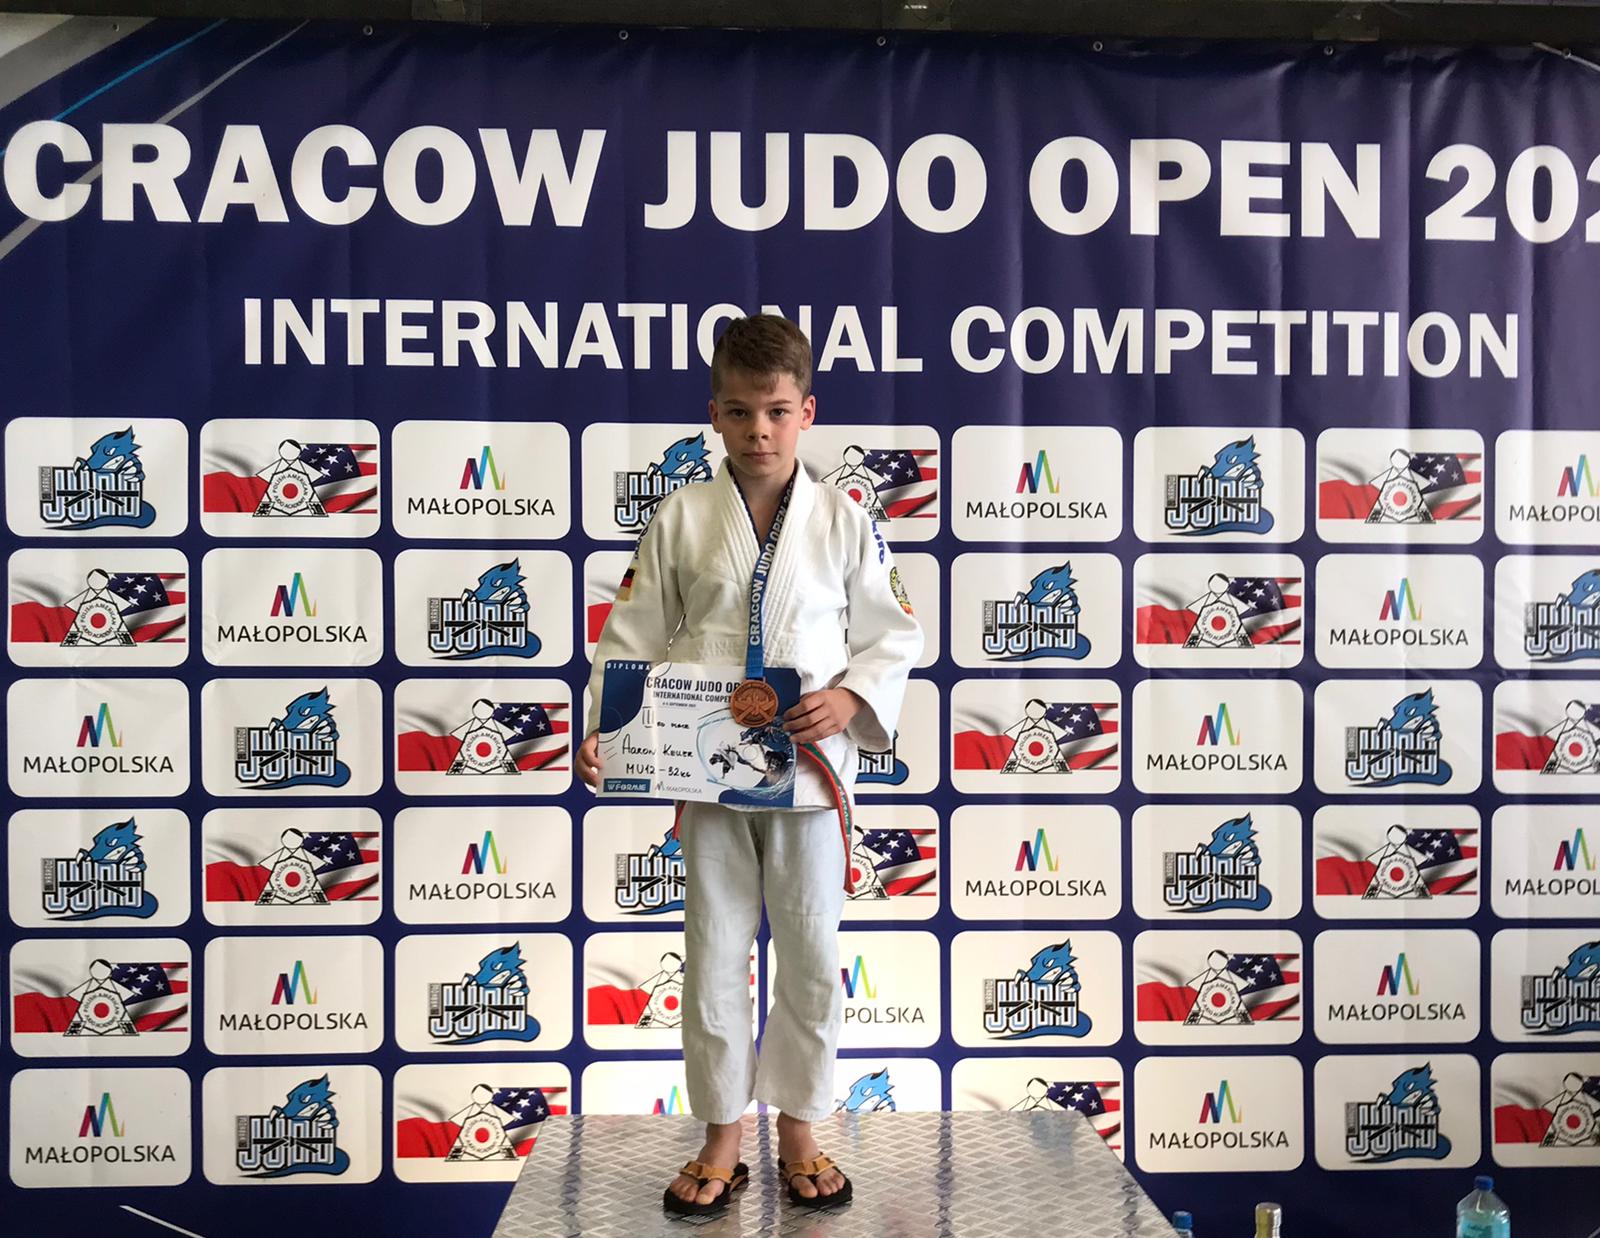 Cracow Judo Open 2021